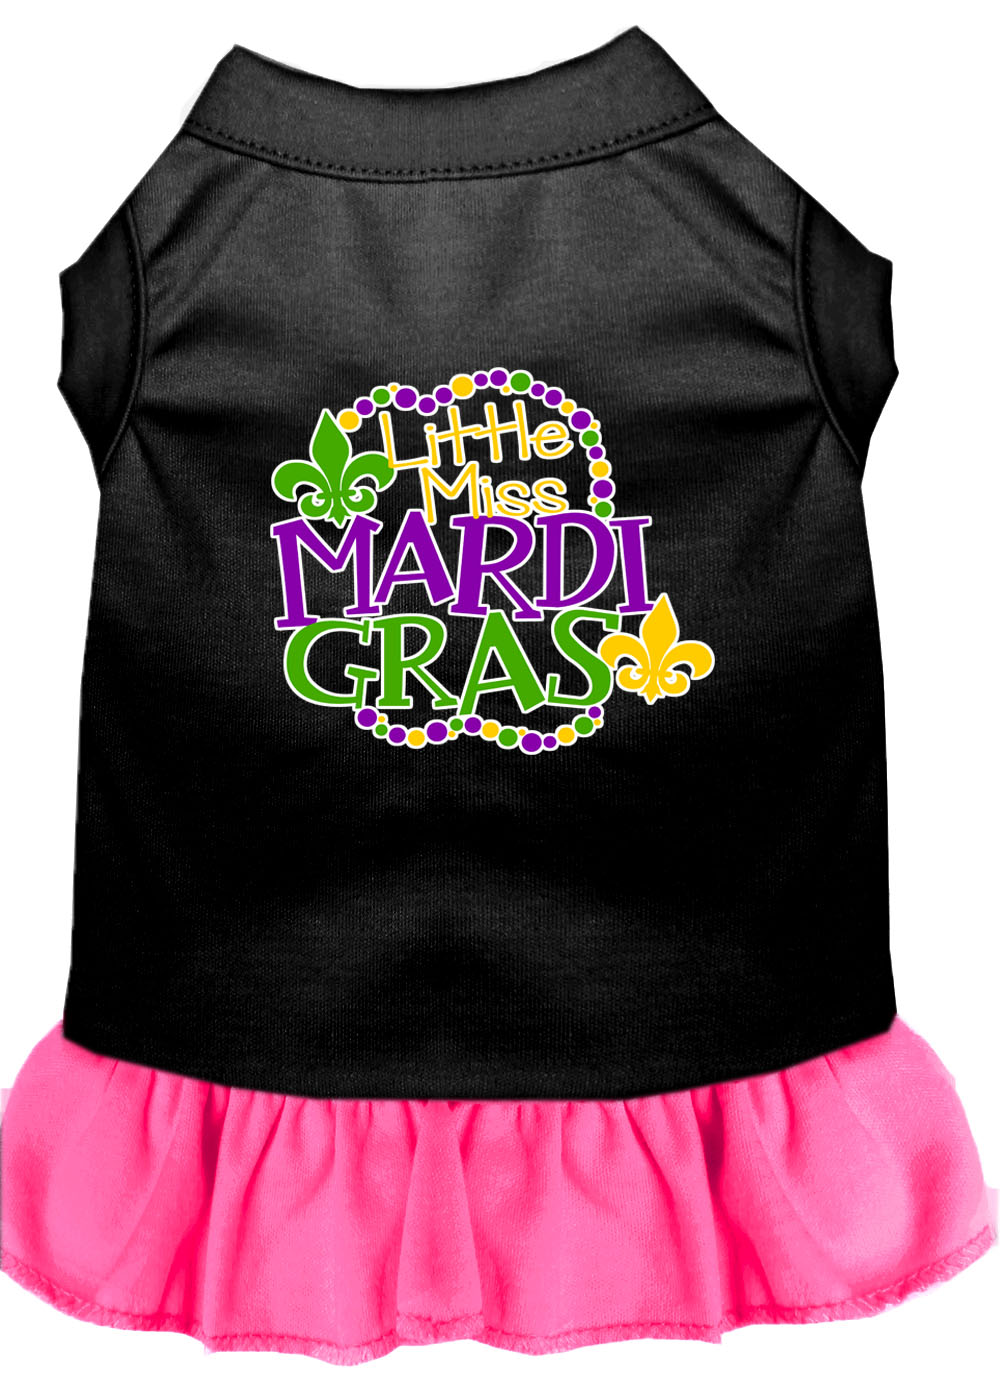 Miss Mardi Gras Screen Print Mardi Gras Dog Dress Black with Bright Pink Sm